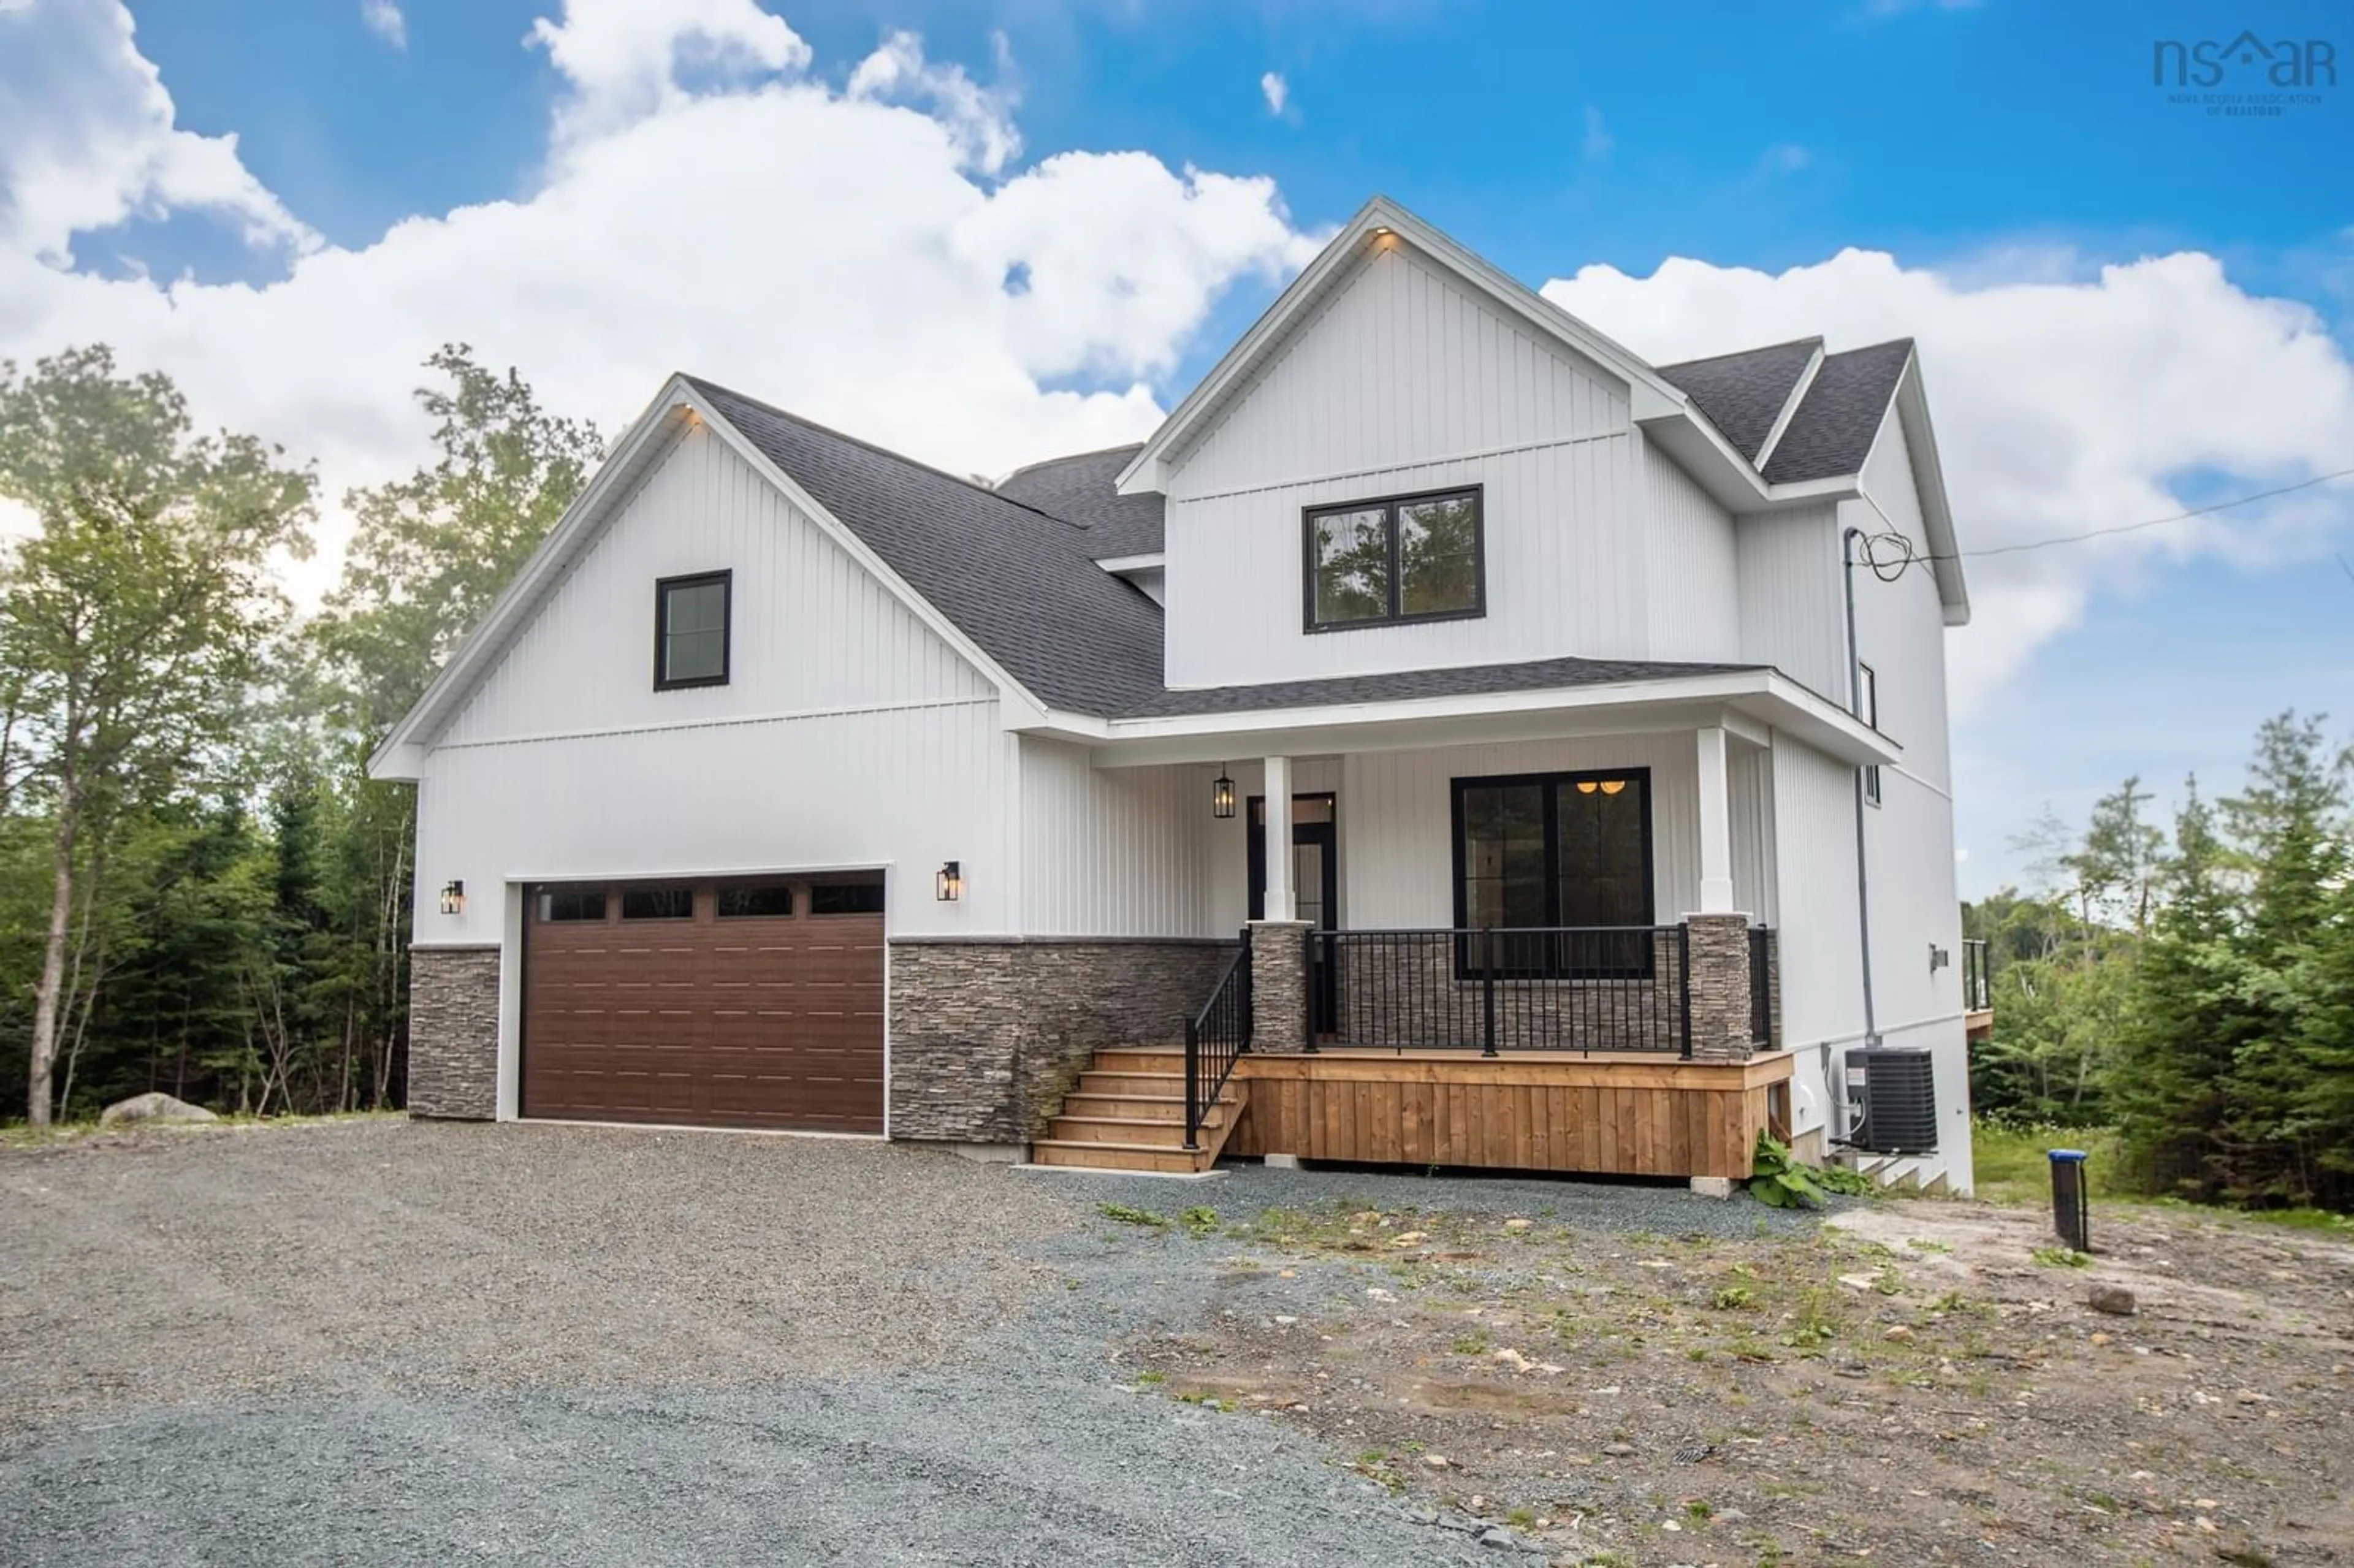 Home with stone exterior material for 70 Fancyview Dr, Harrietsfield Nova Scotia B3V 0E5